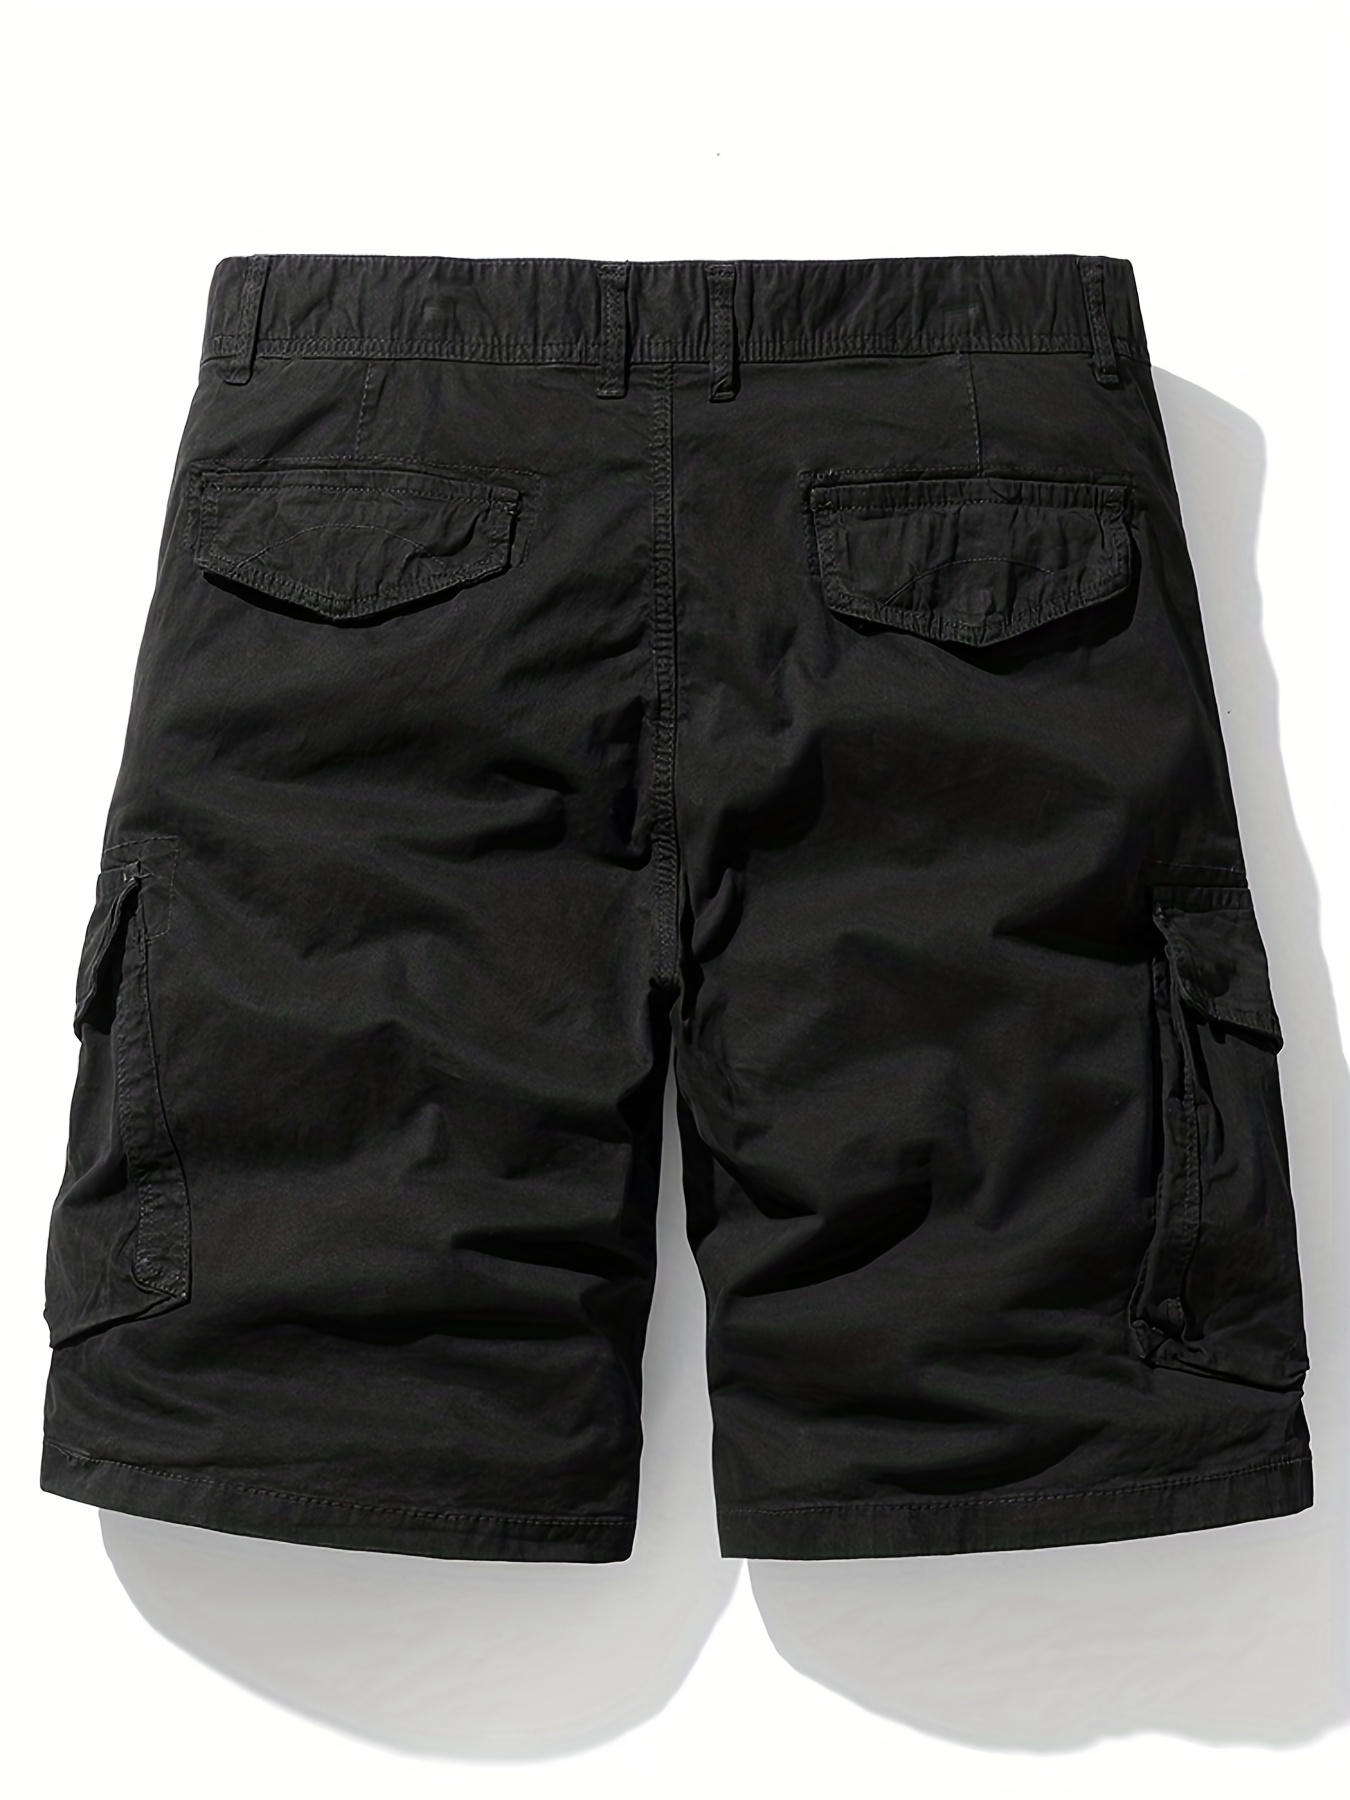 Men's Plus Size Vintage Style Cotton Cargo Shorts, Solid Color